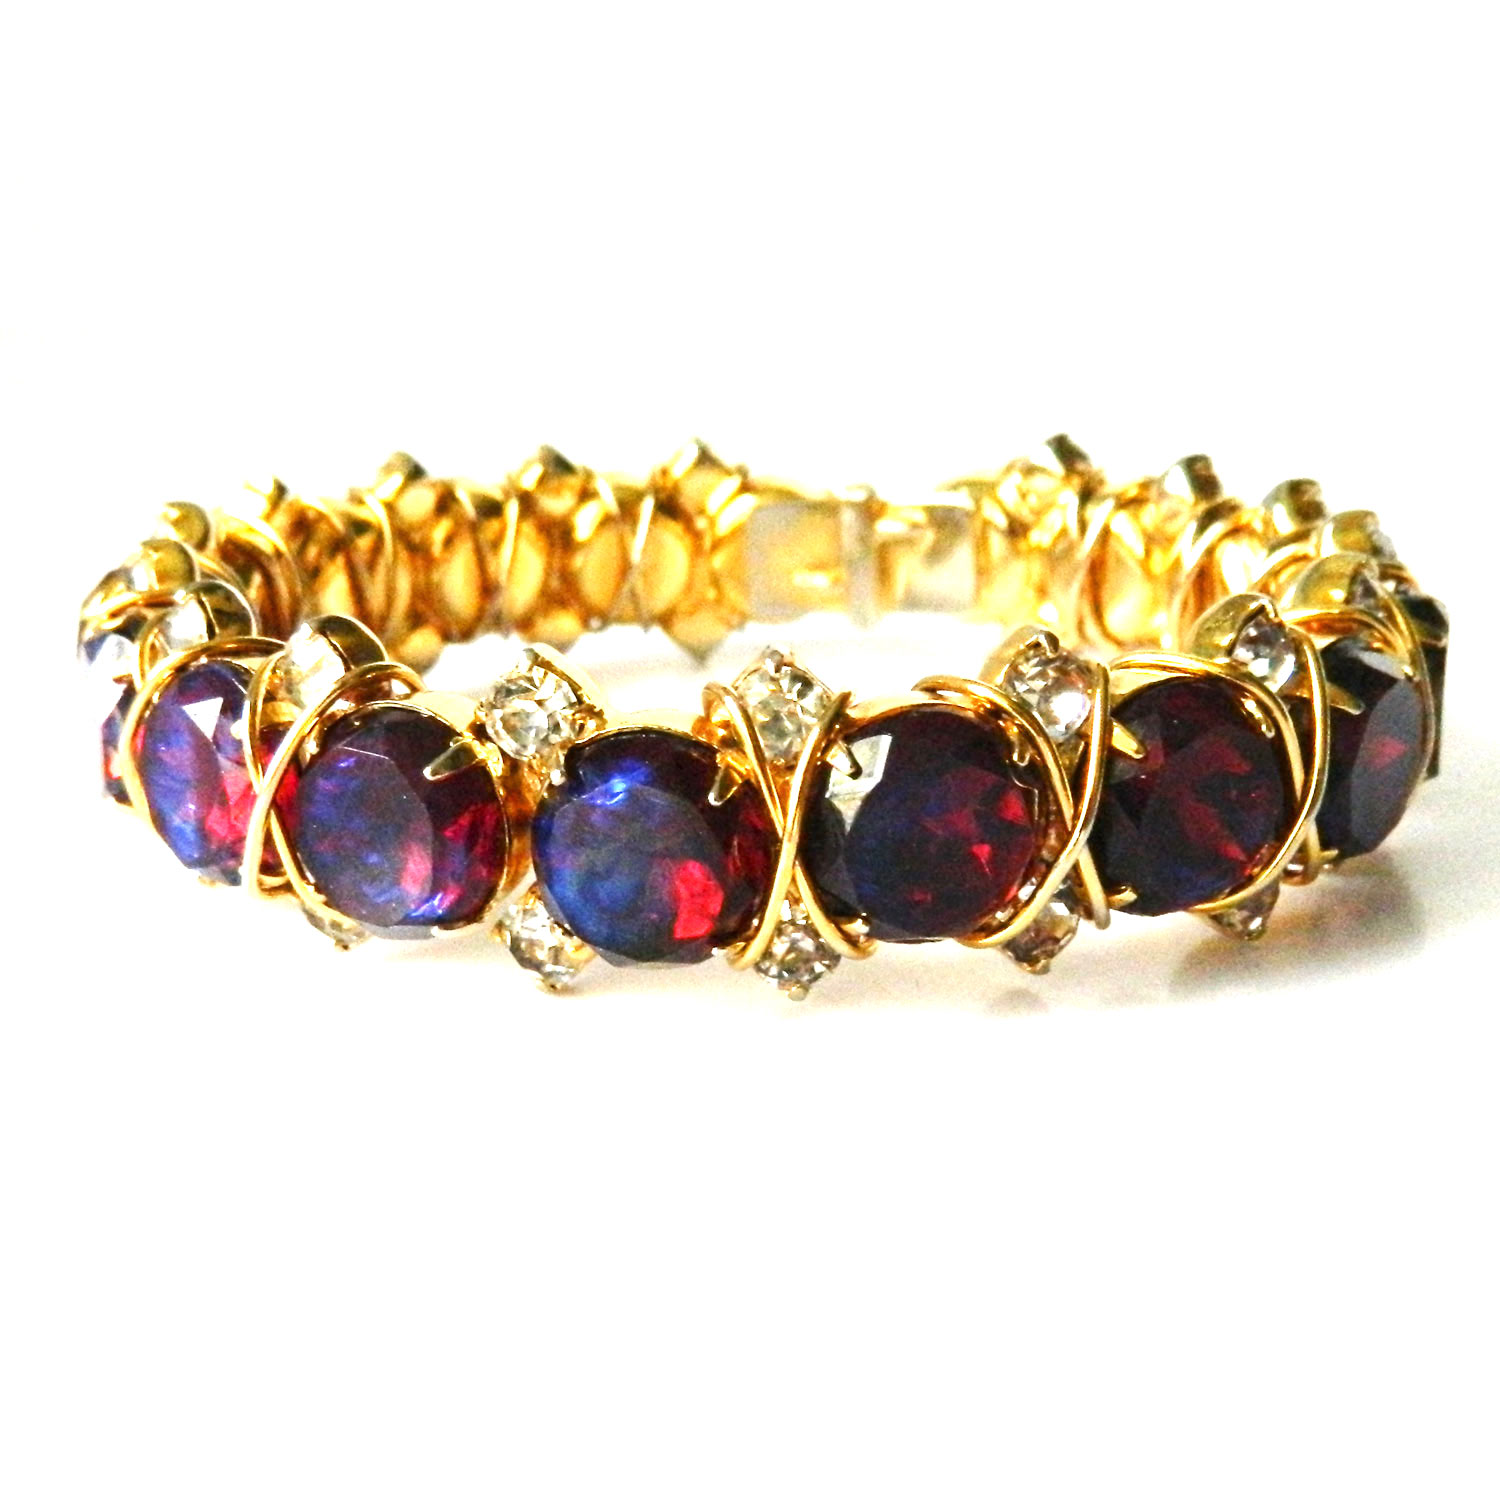 Goldette slide charm bracelet